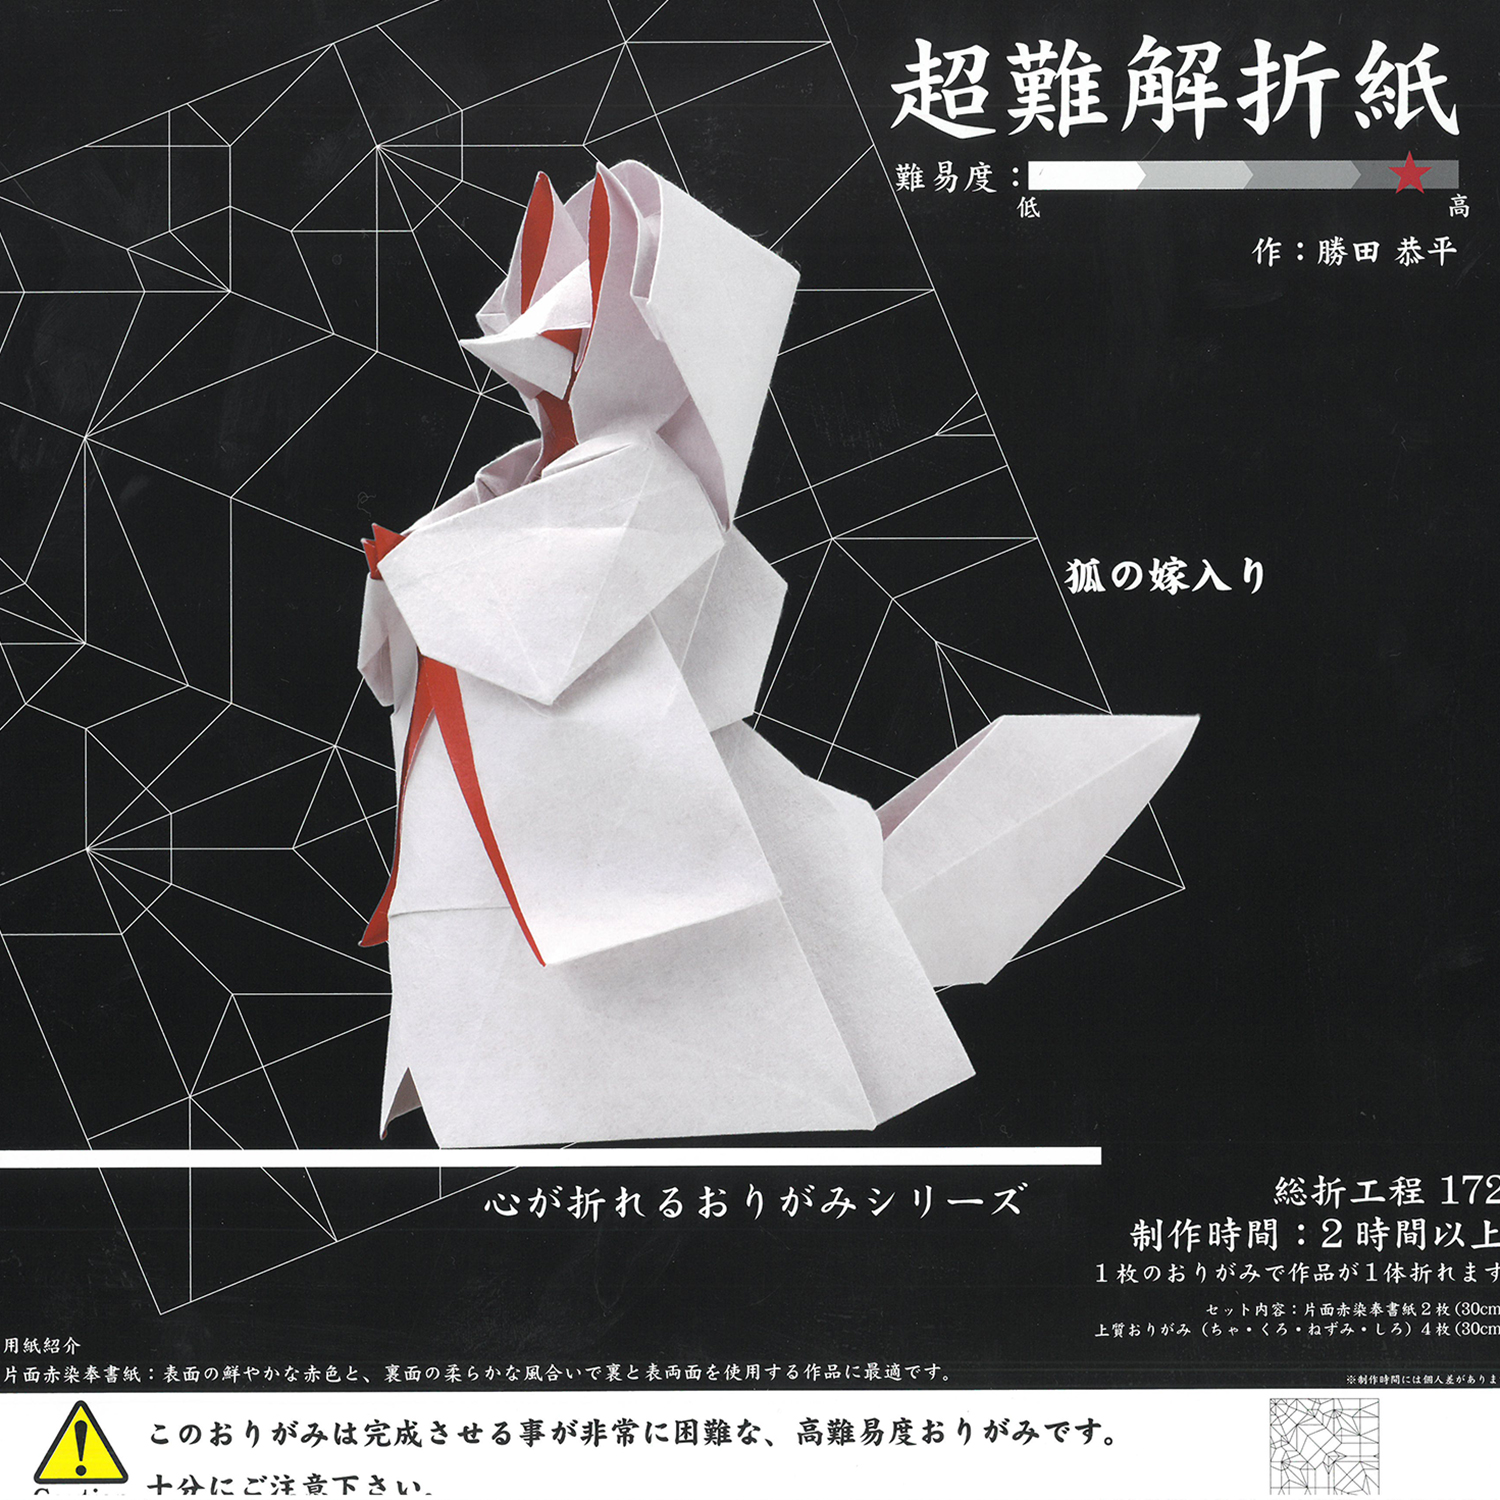 石川の楽しい折り紙やペーパークラフトは金沢「近江町市場」にある紙の専門店「紙文房あらき」 メーカーさんの折り紙